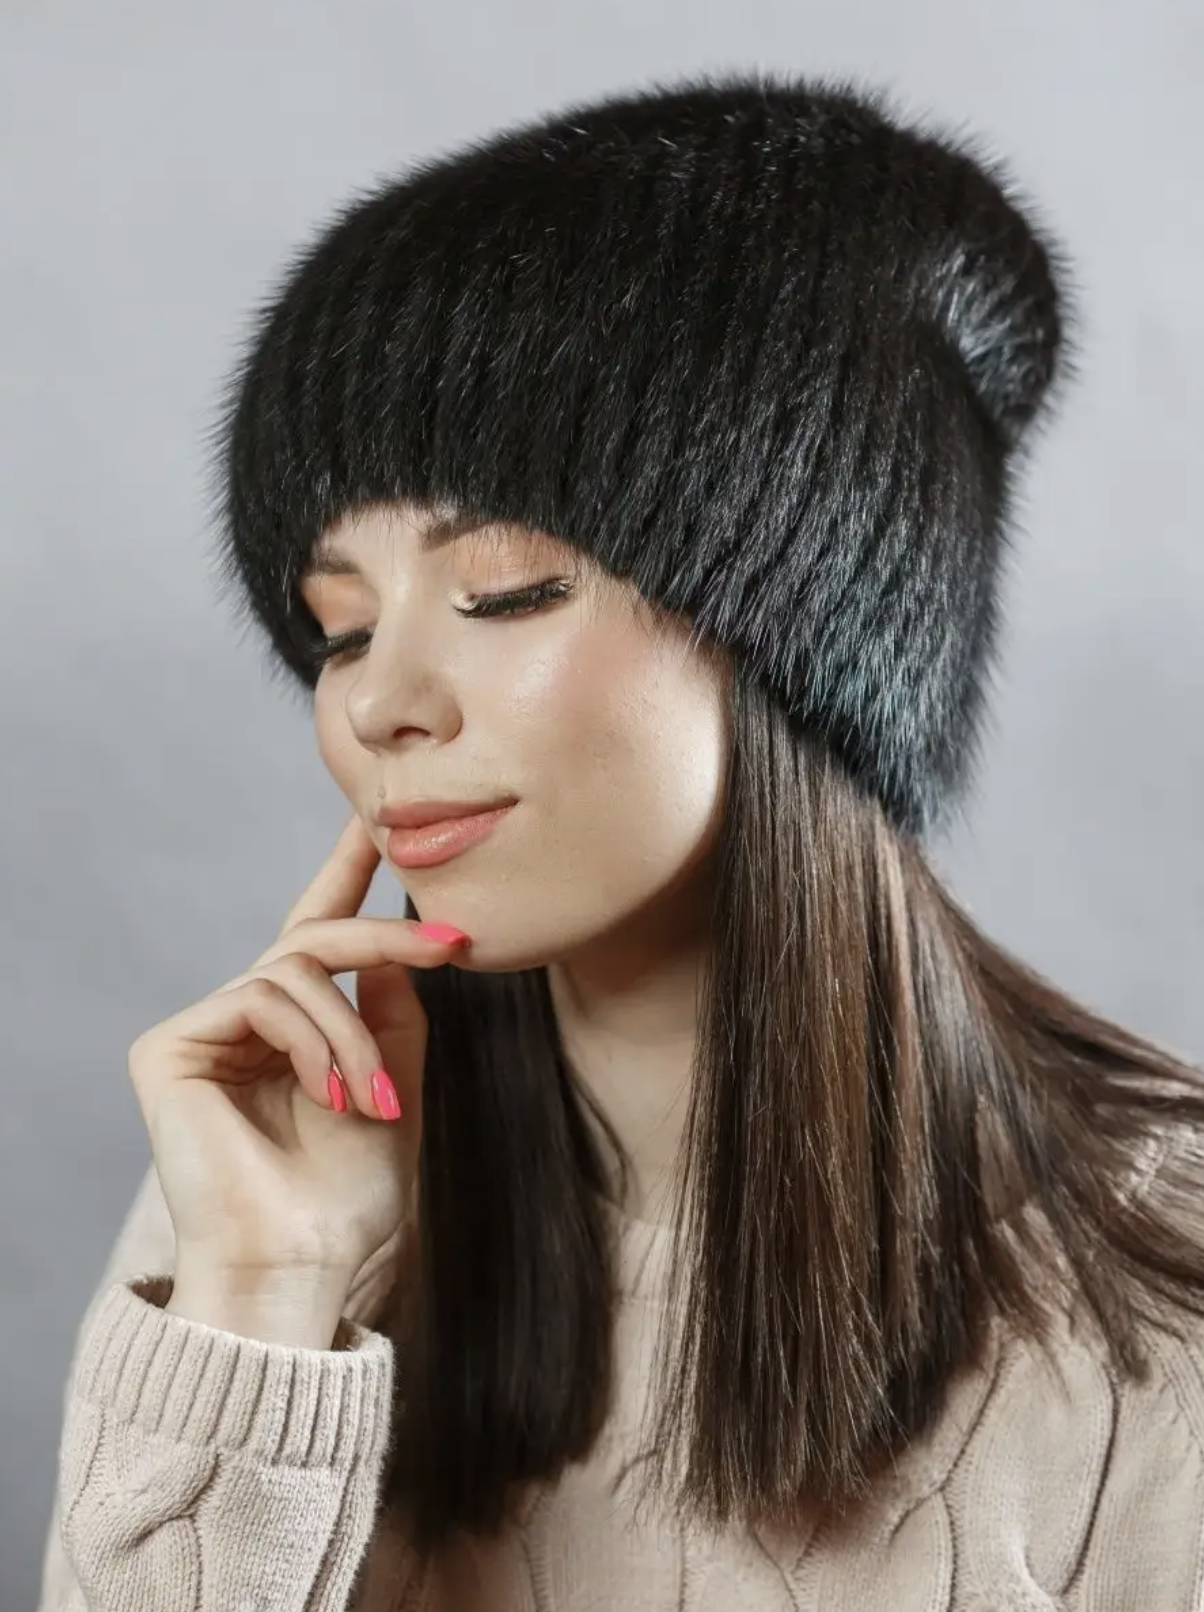 Лучшие шапки осень-зима модные женские шапки-новинки, фото, тренды